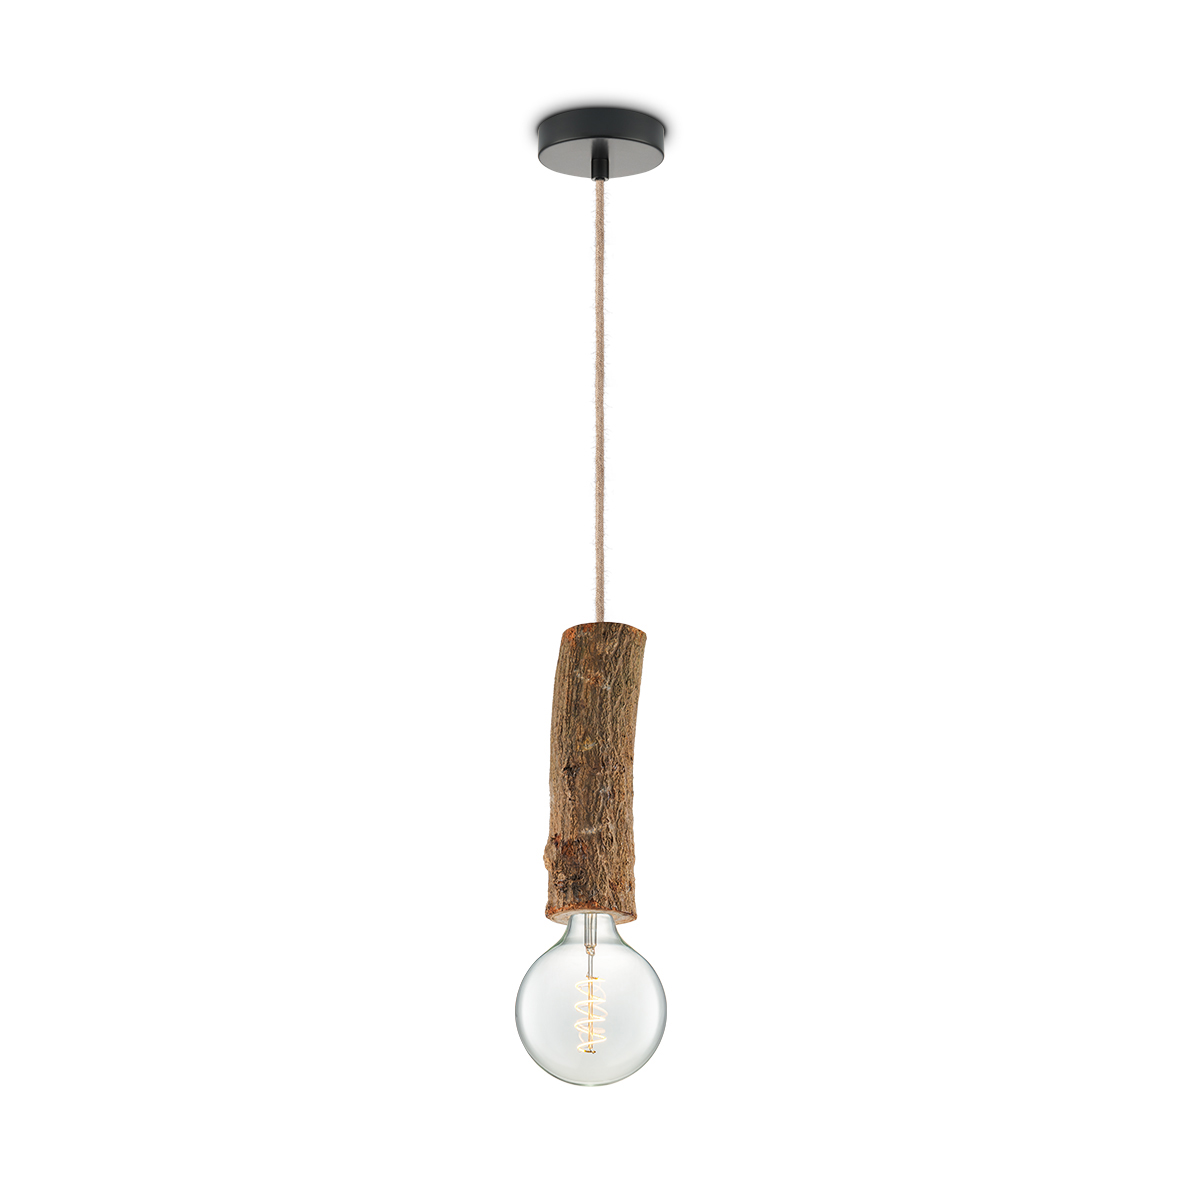 Tangla lighting - TLP7060-26NT - LED Pendant lamp 1 Light - metal + FSC wood -  natural - large texture - E27